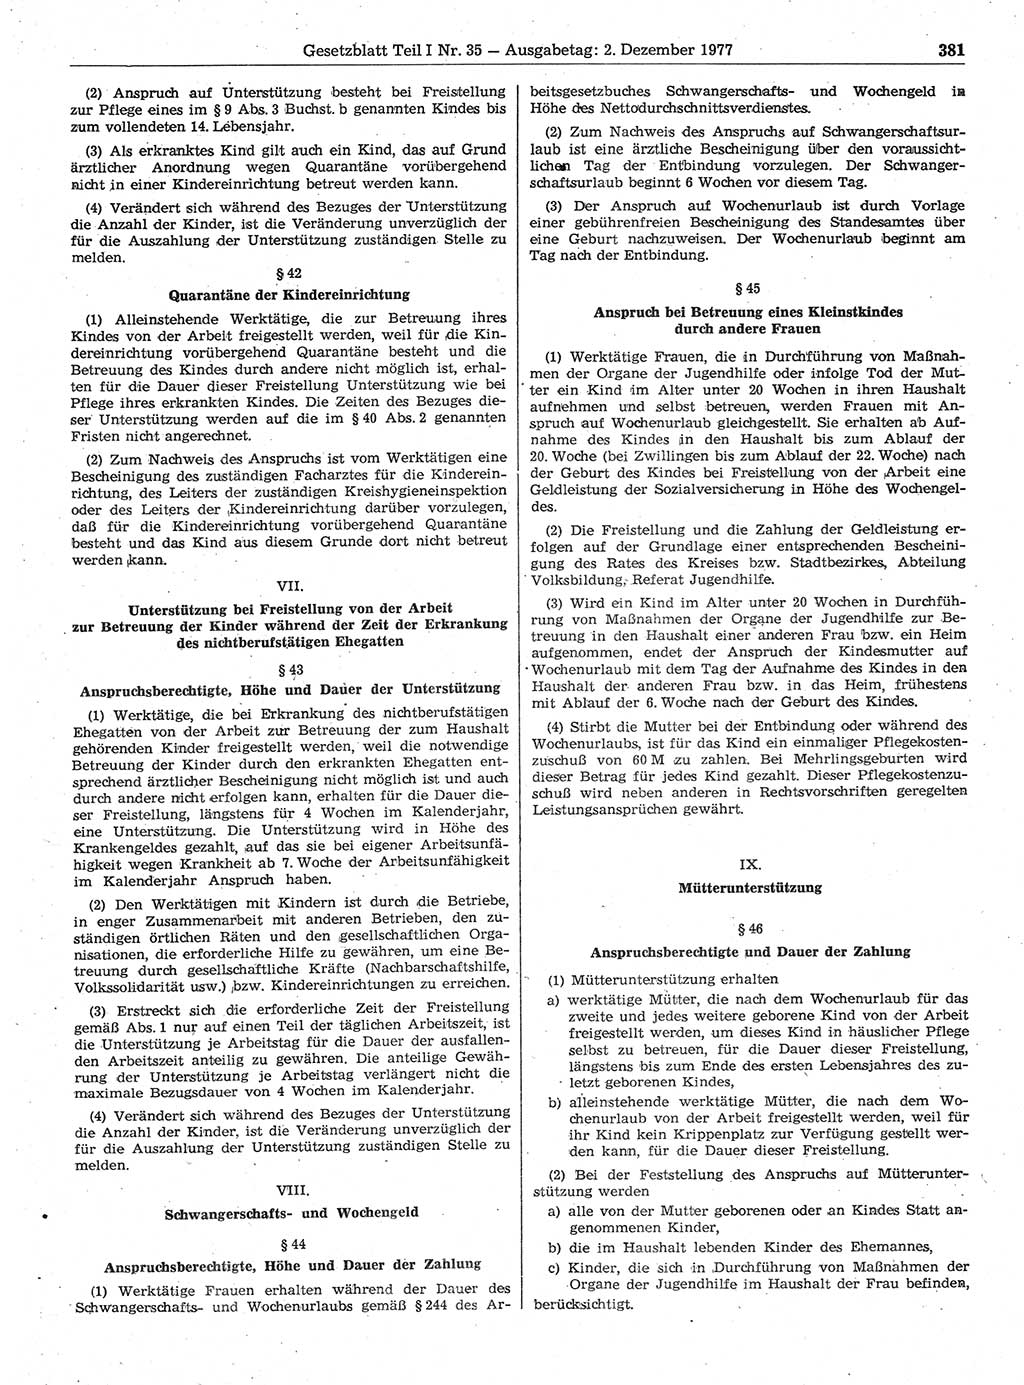 Gesetzblatt (GBl.) der Deutschen Demokratischen Republik (DDR) Teil Ⅰ 1977, Seite 381 (GBl. DDR Ⅰ 1977, S. 381)